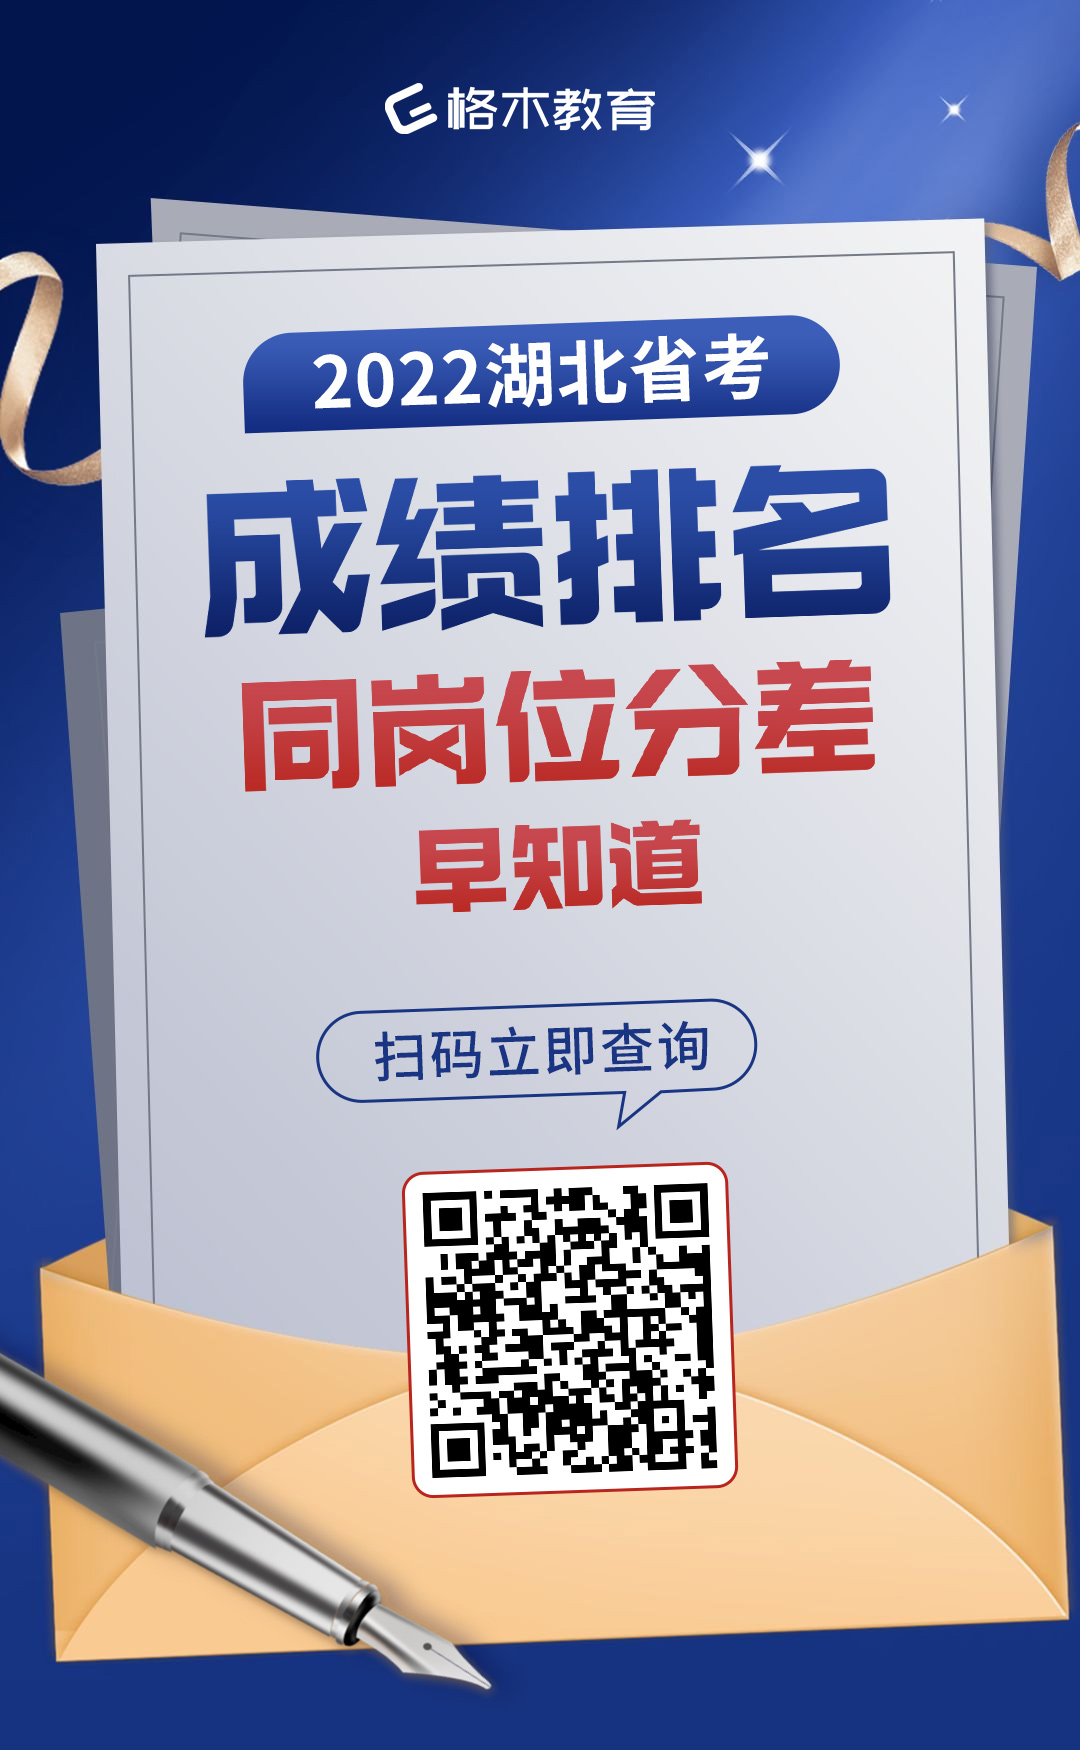 2022湖北省市县乡考试录用公务员笔试成绩查询公告